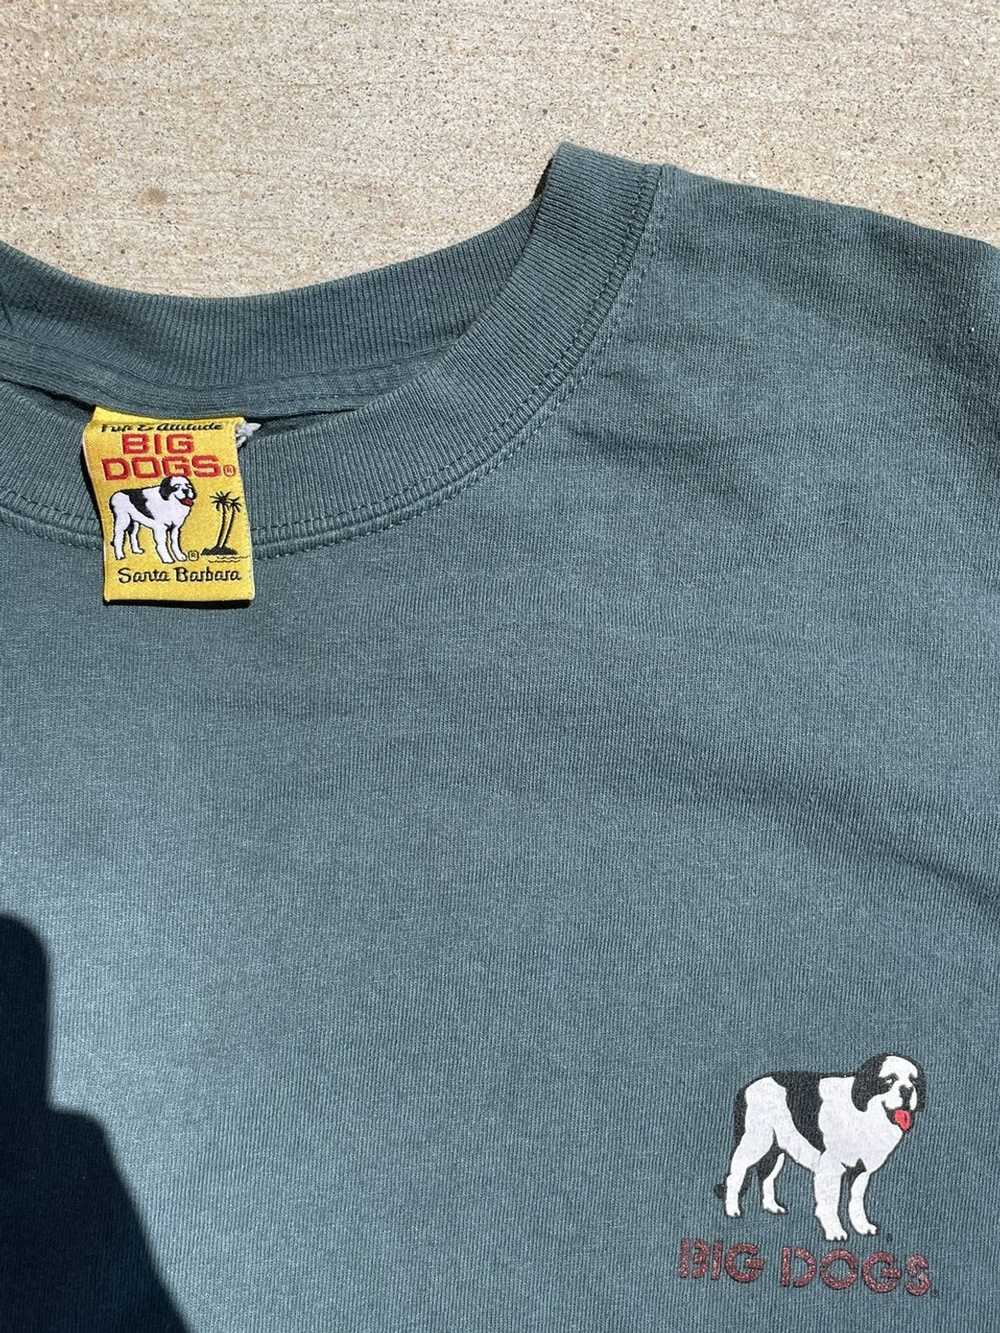 Big Dogs × Vintage Vintage Big Dogs Shirt - image 2